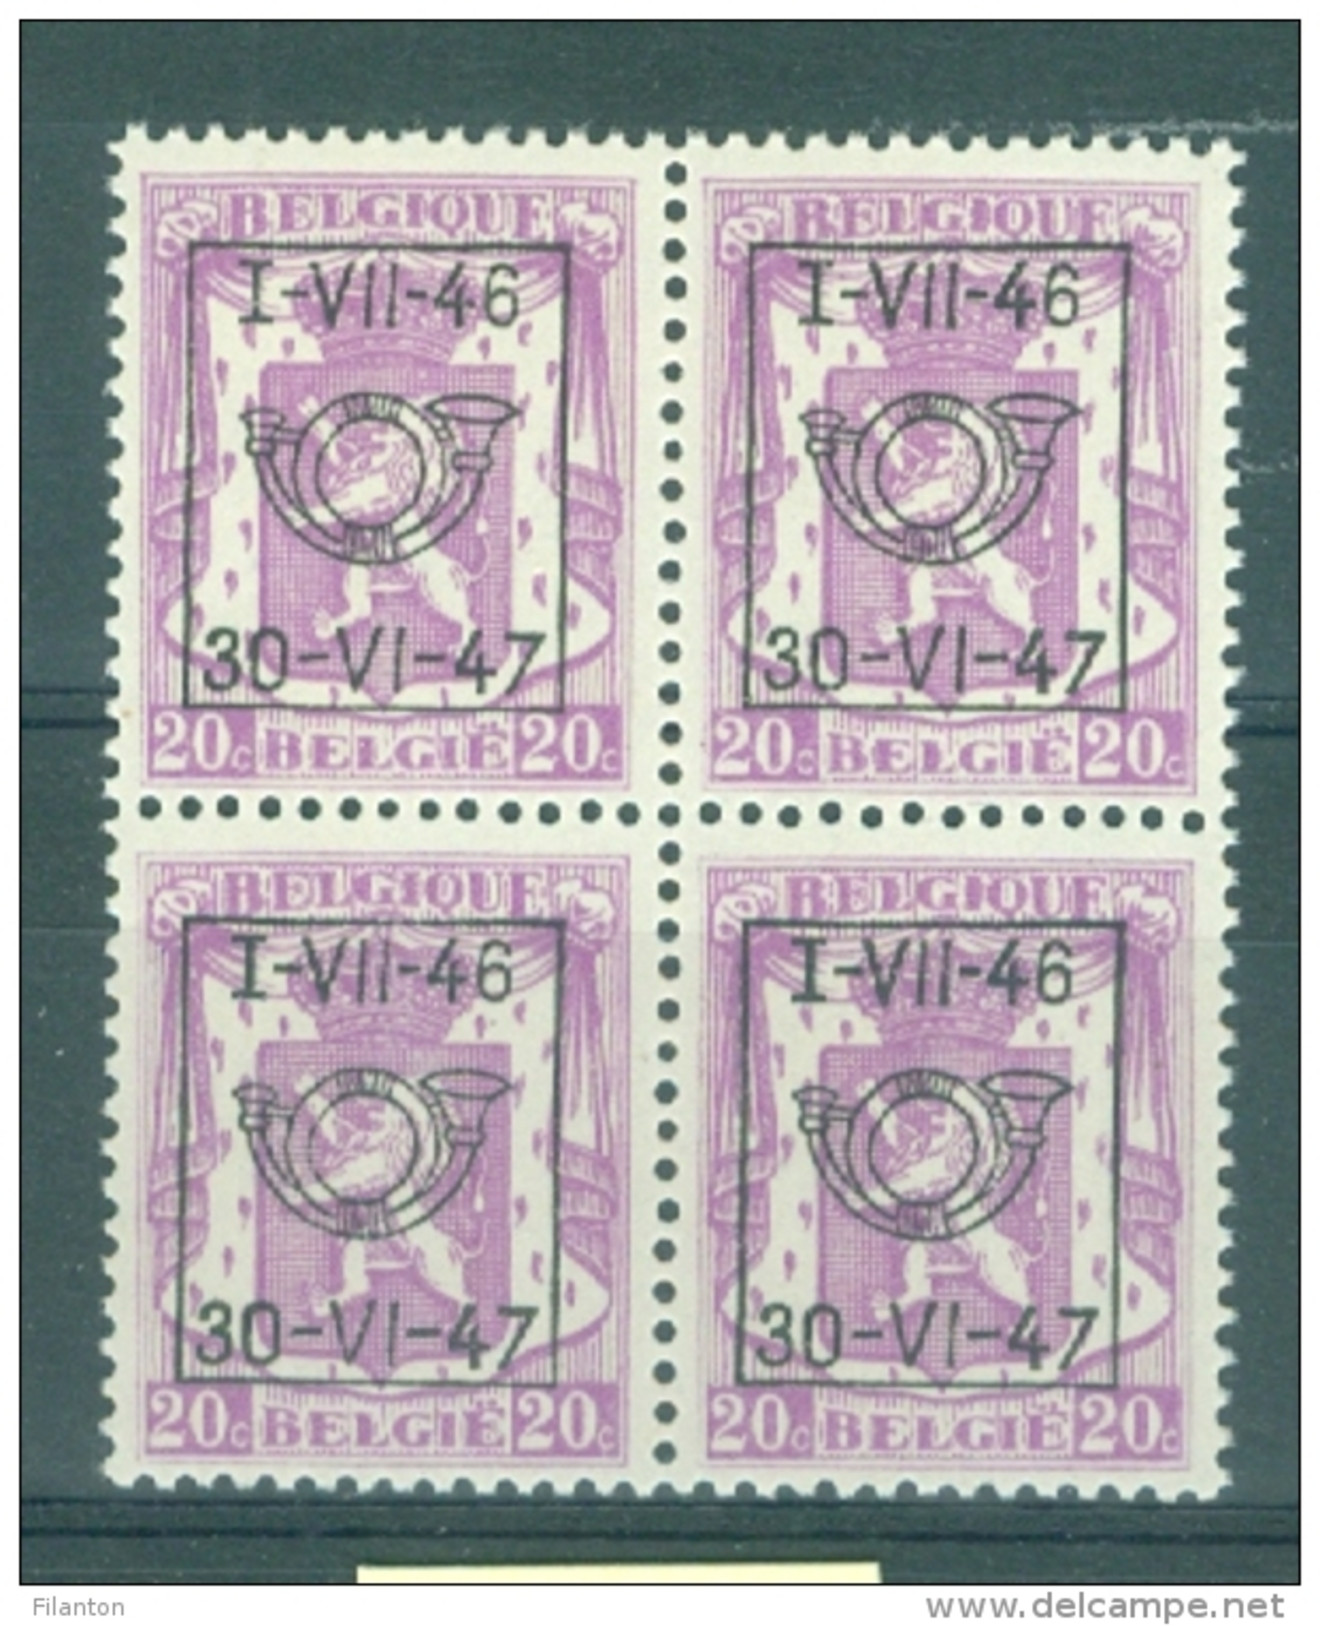 BELGIE - OBP Nr PRE 555 (blok Van 4) - TYPO Preo's/Precancels - MNH** - Typos 1936-51 (Kleines Siegel)